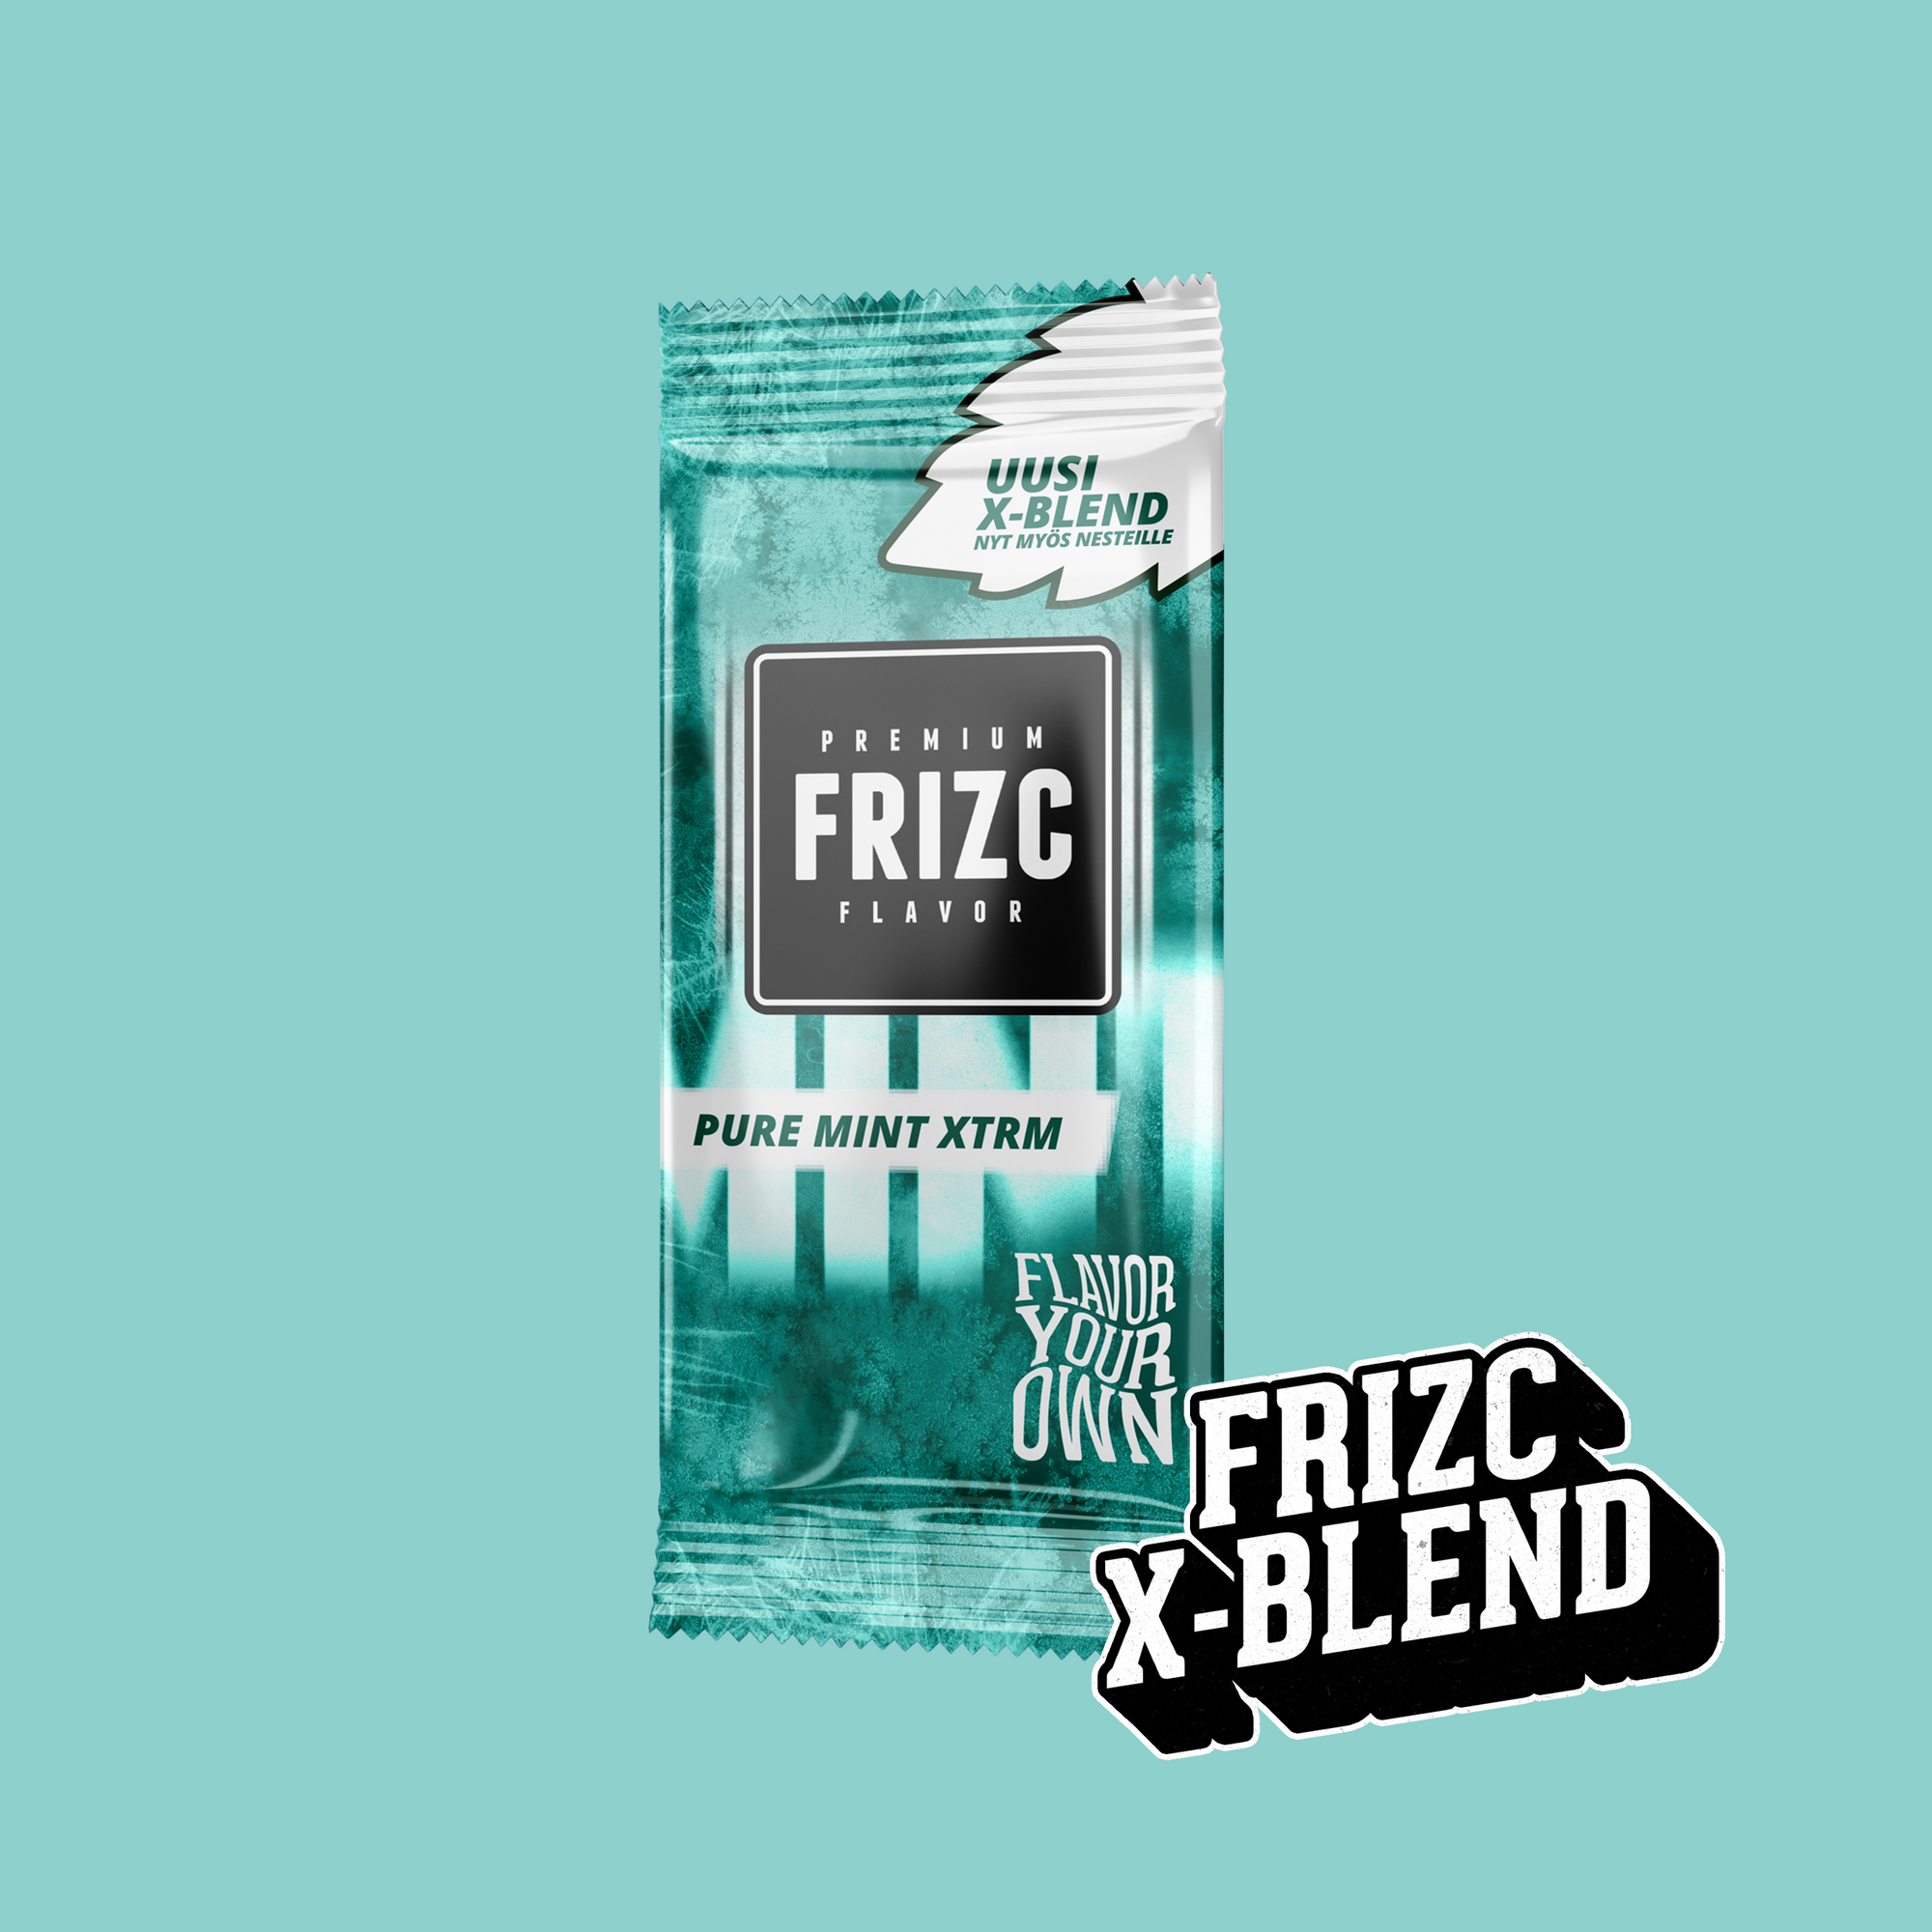 Frizc Pure Mint Xtrm 25pcs